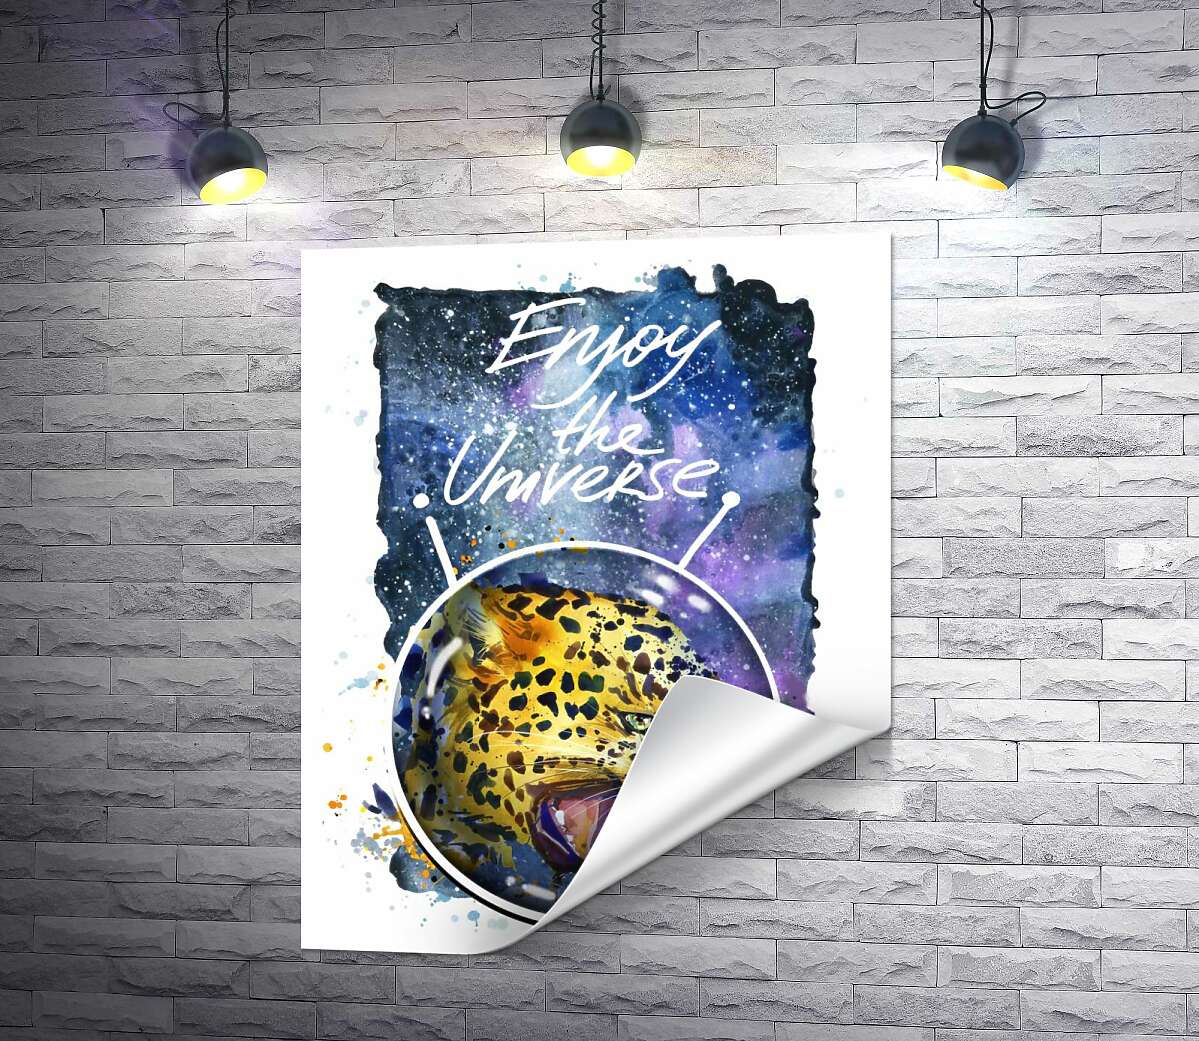 друк Хижий леопард скалить зуби в космосі з написом "Enjoy the Universe"